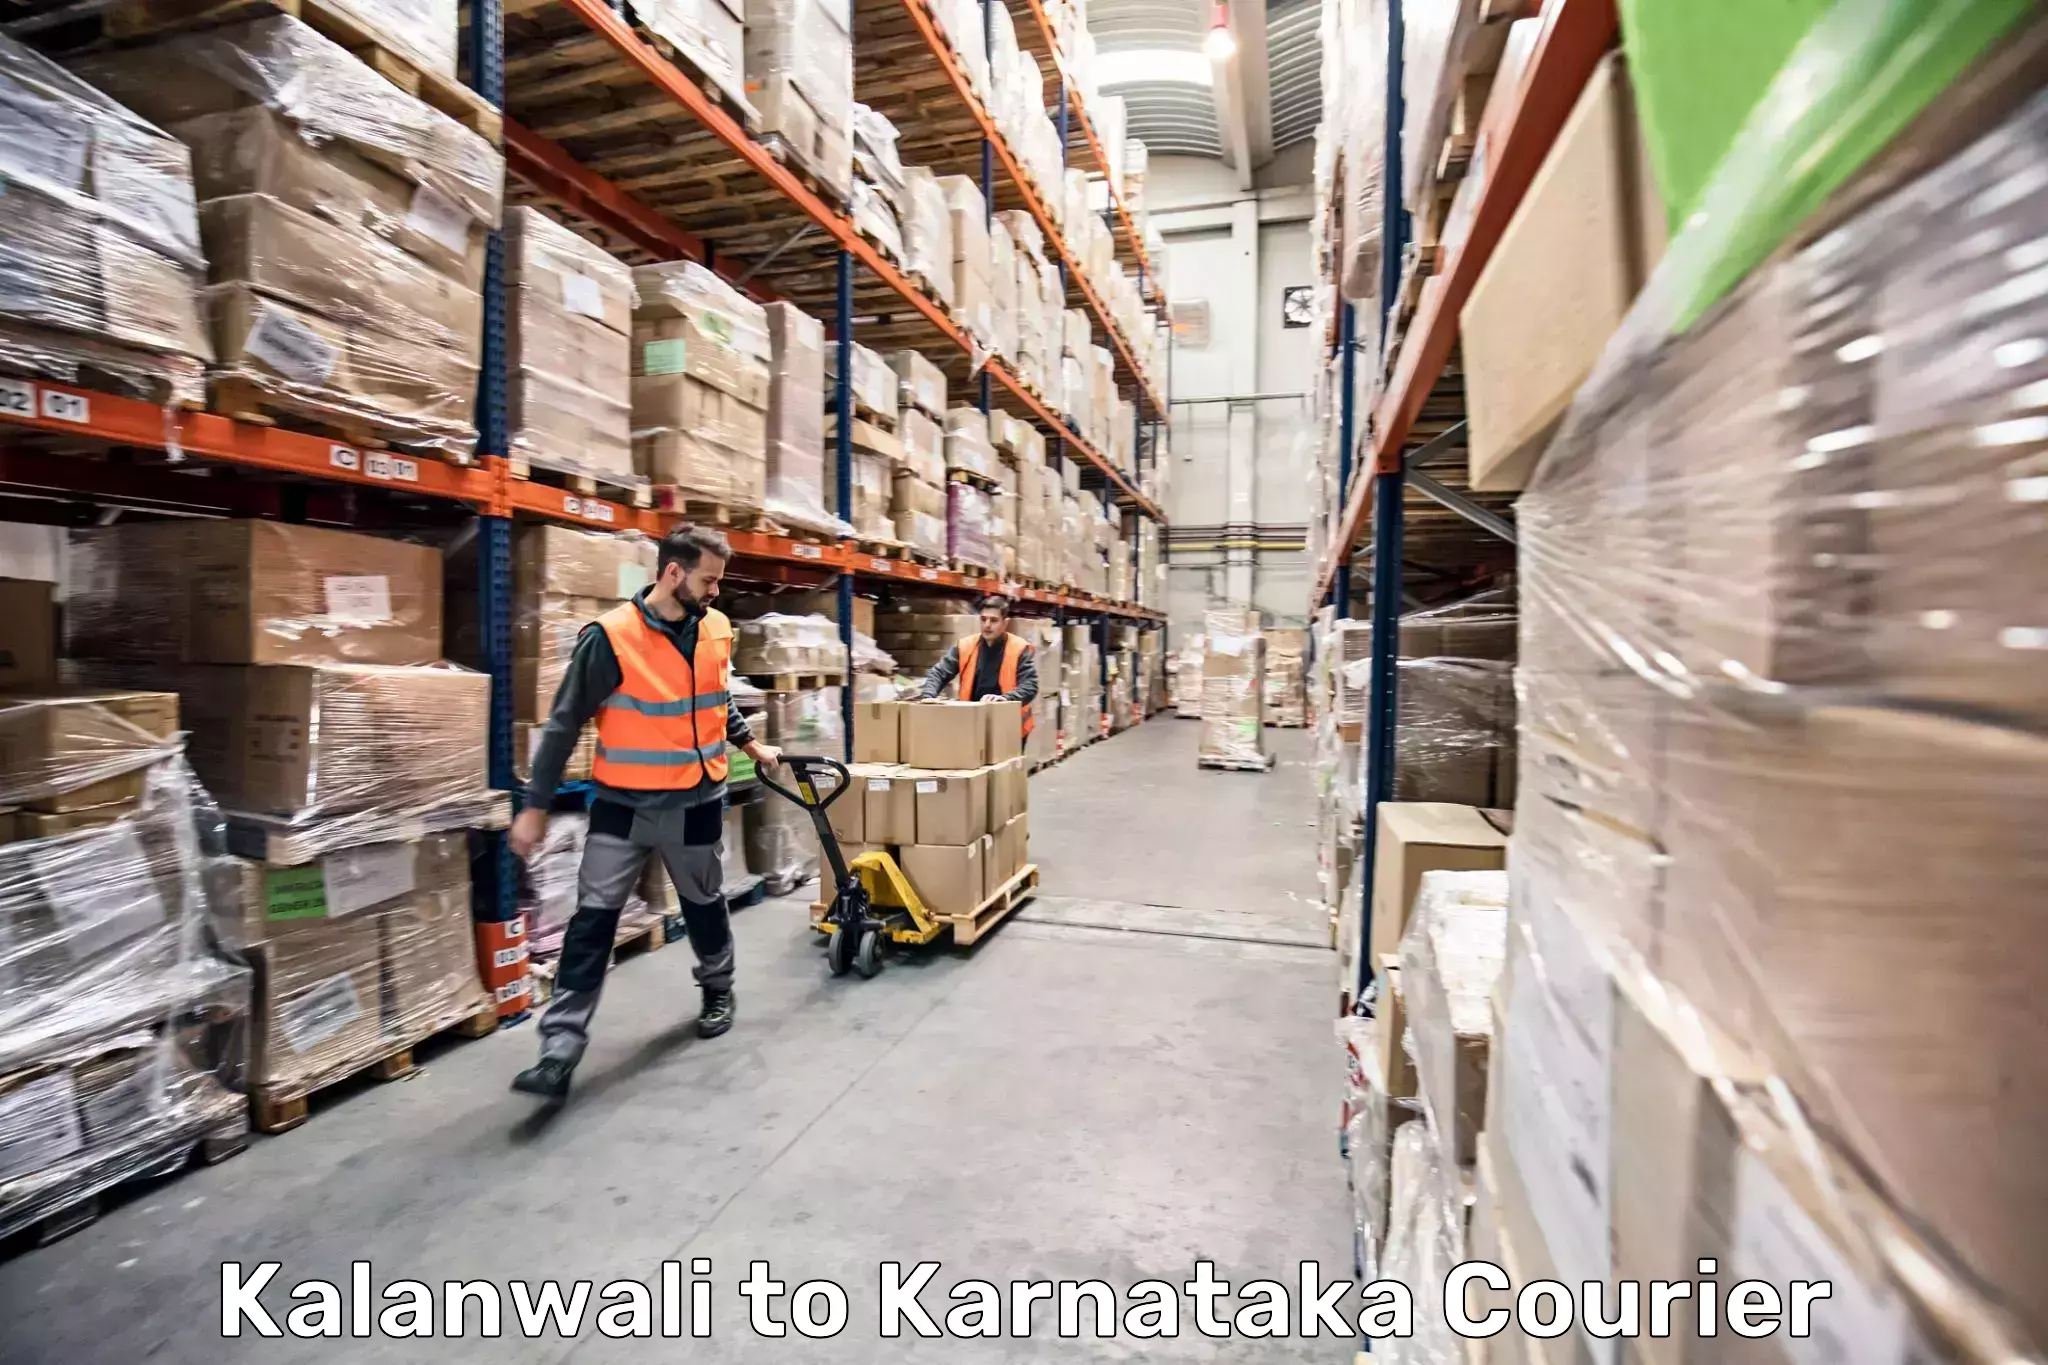 Luggage delivery app Kalanwali to Yenepoya Mangalore